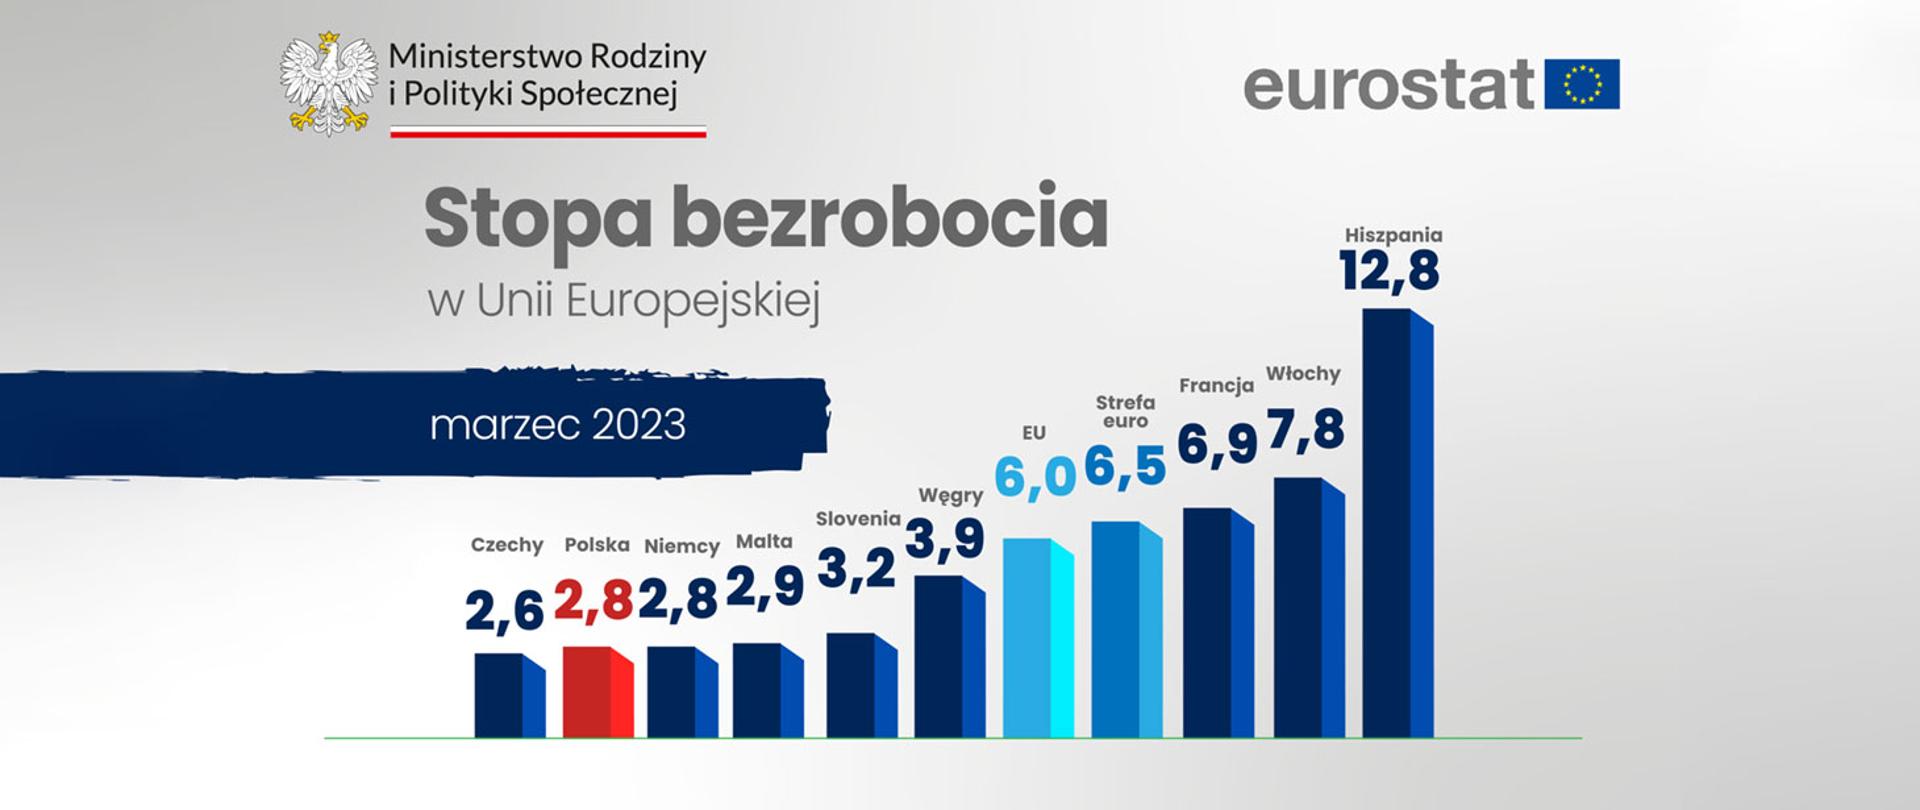 Stopa bezrobocia w Unii Europejskiej w marcu 2023 roku